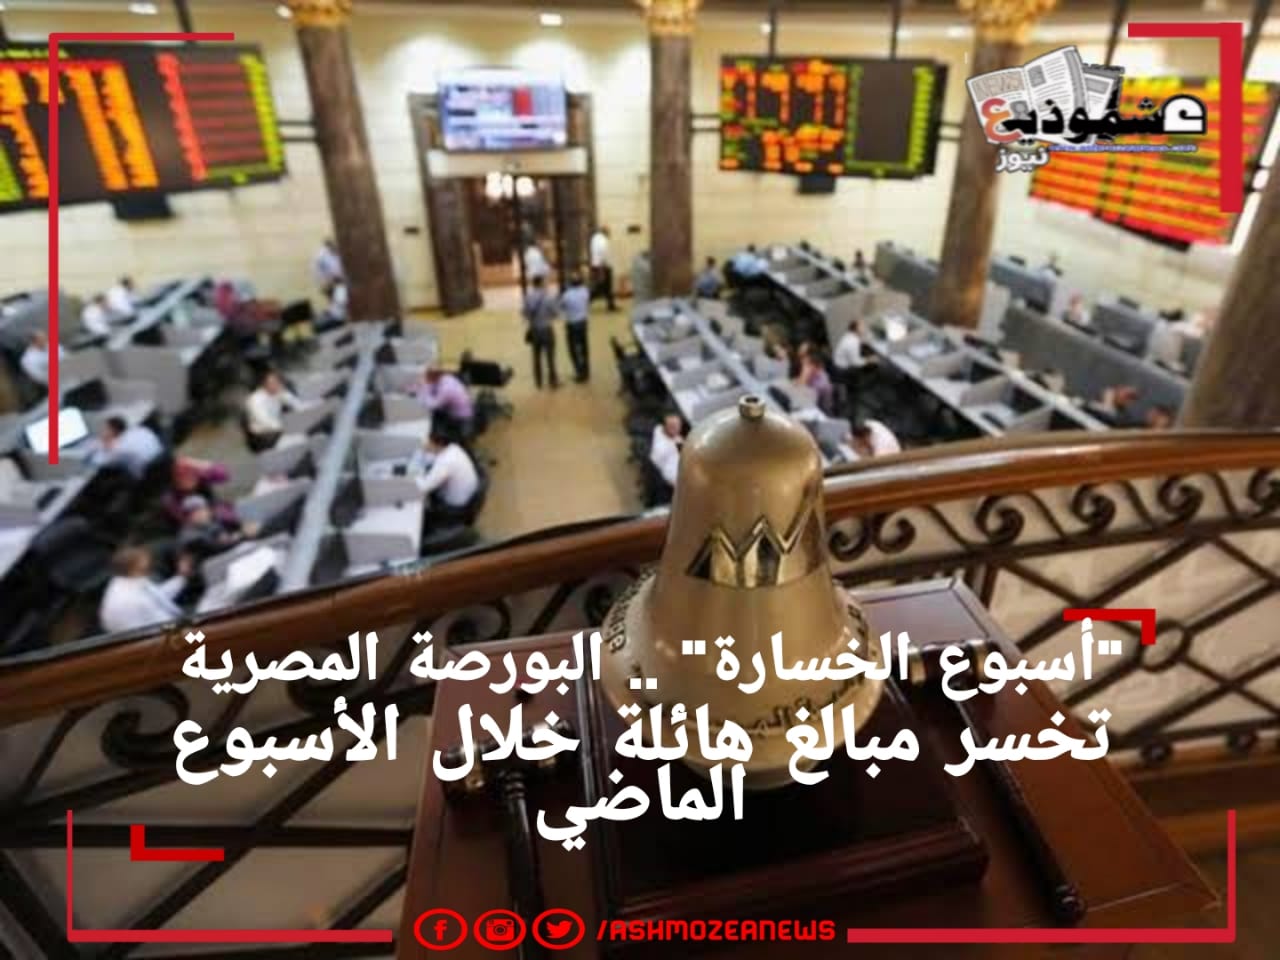  "أسبوع الخسارة" .. البورصة المصرية تخسر مبالغ هائلة خلال الأسبوع الماضي 